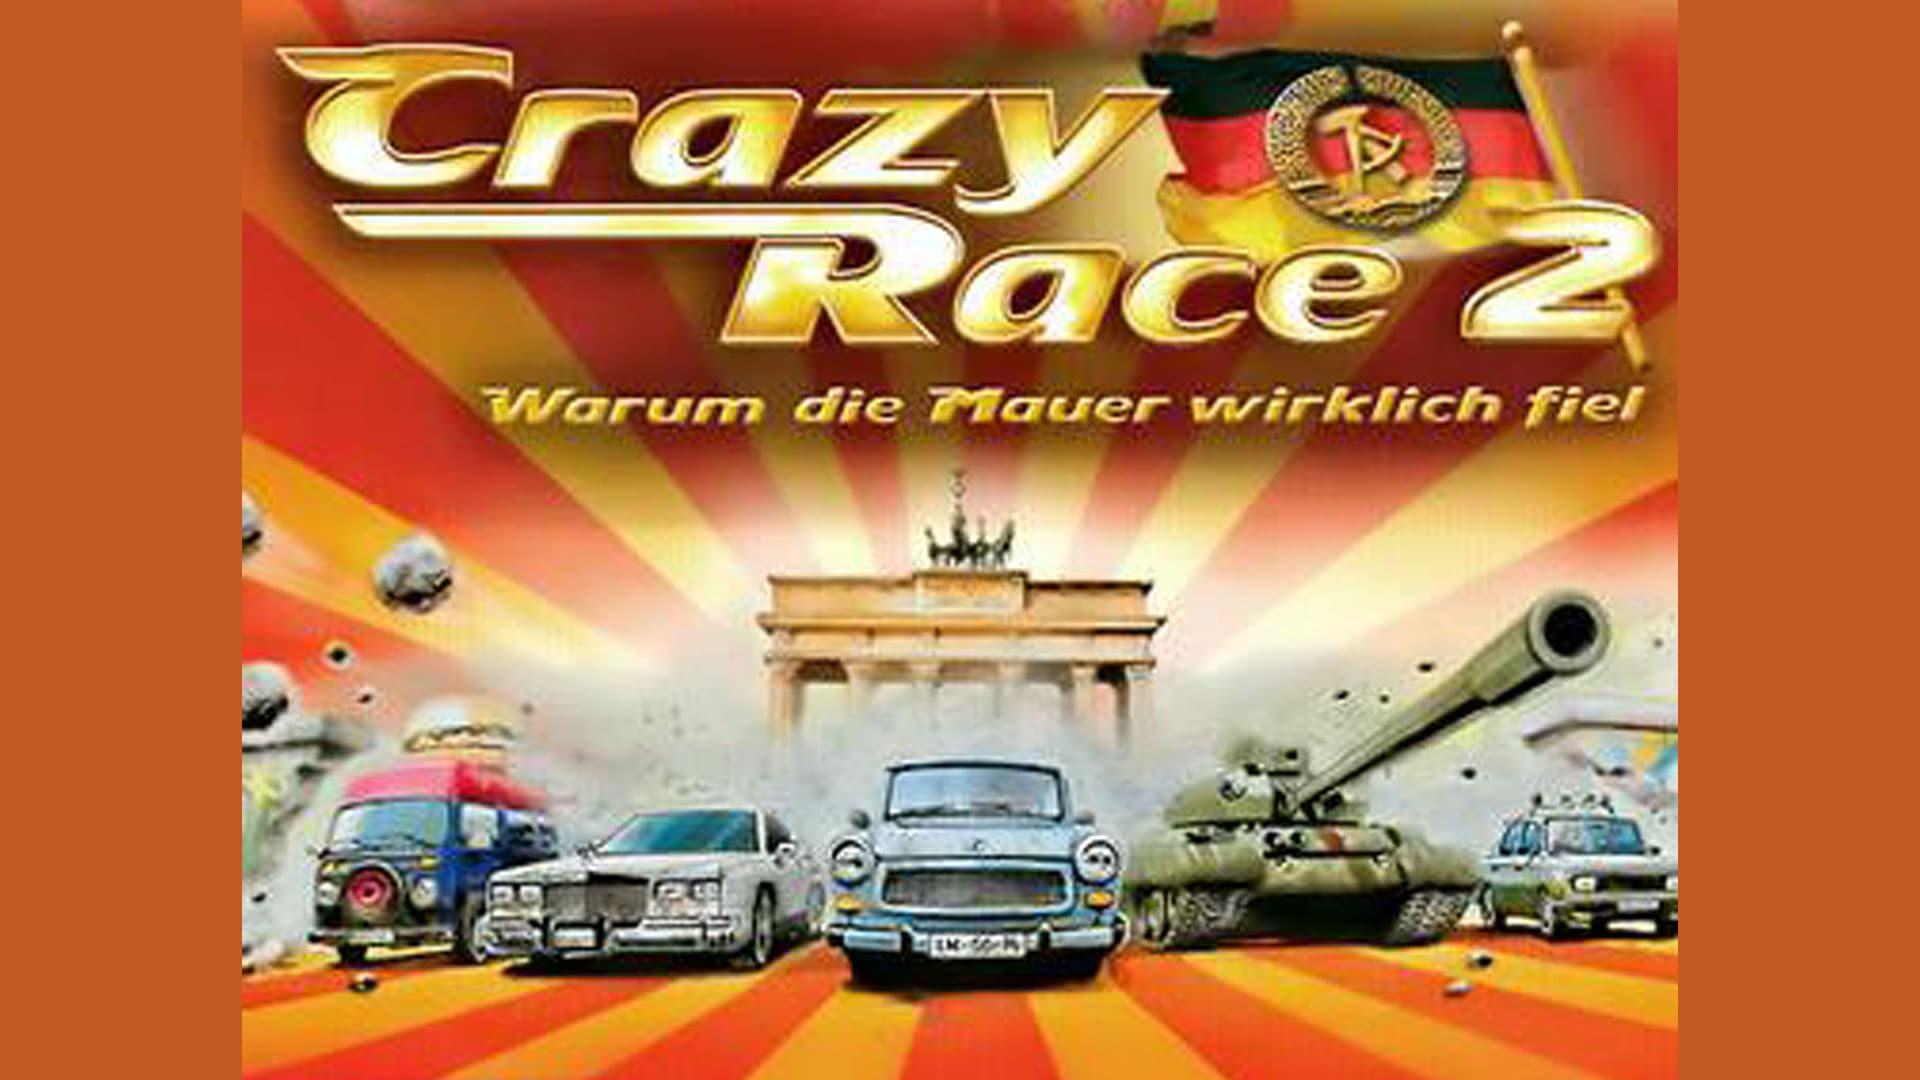 Crazy Race 2 - Warum die Mauer wirklich fiel backdrop